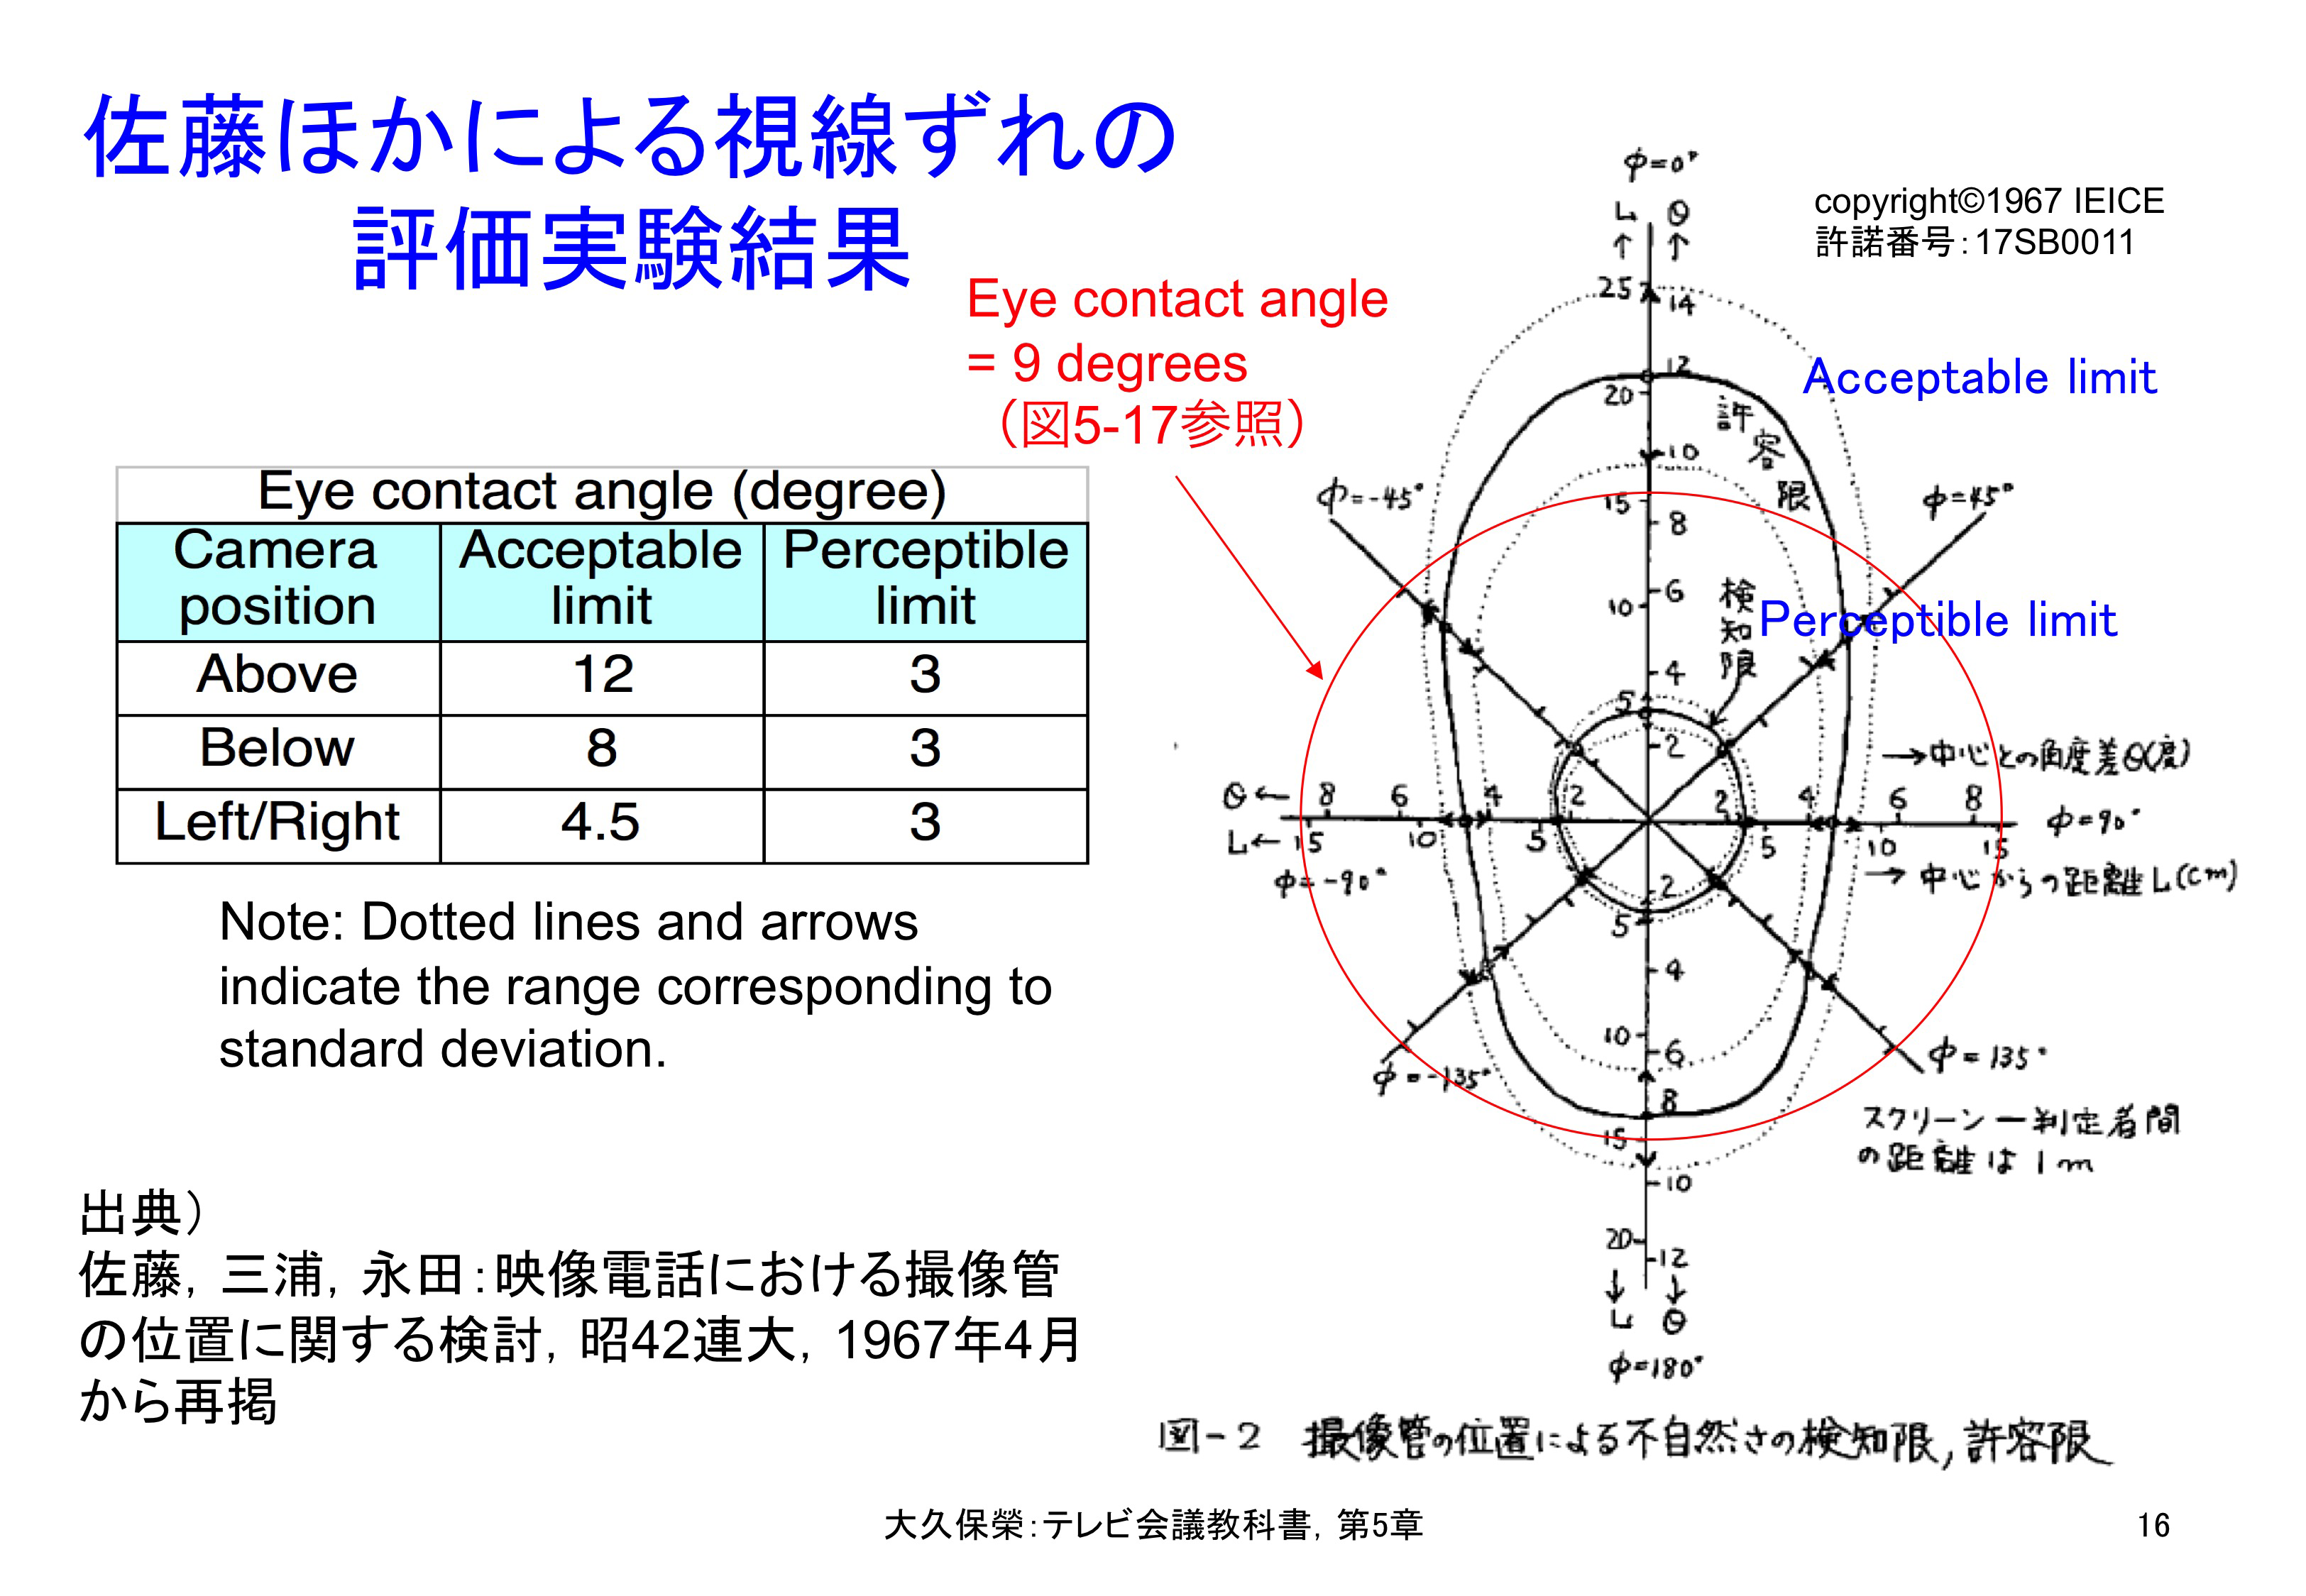 図5-16 佐藤ほかによる視線ずれの評価実験結果